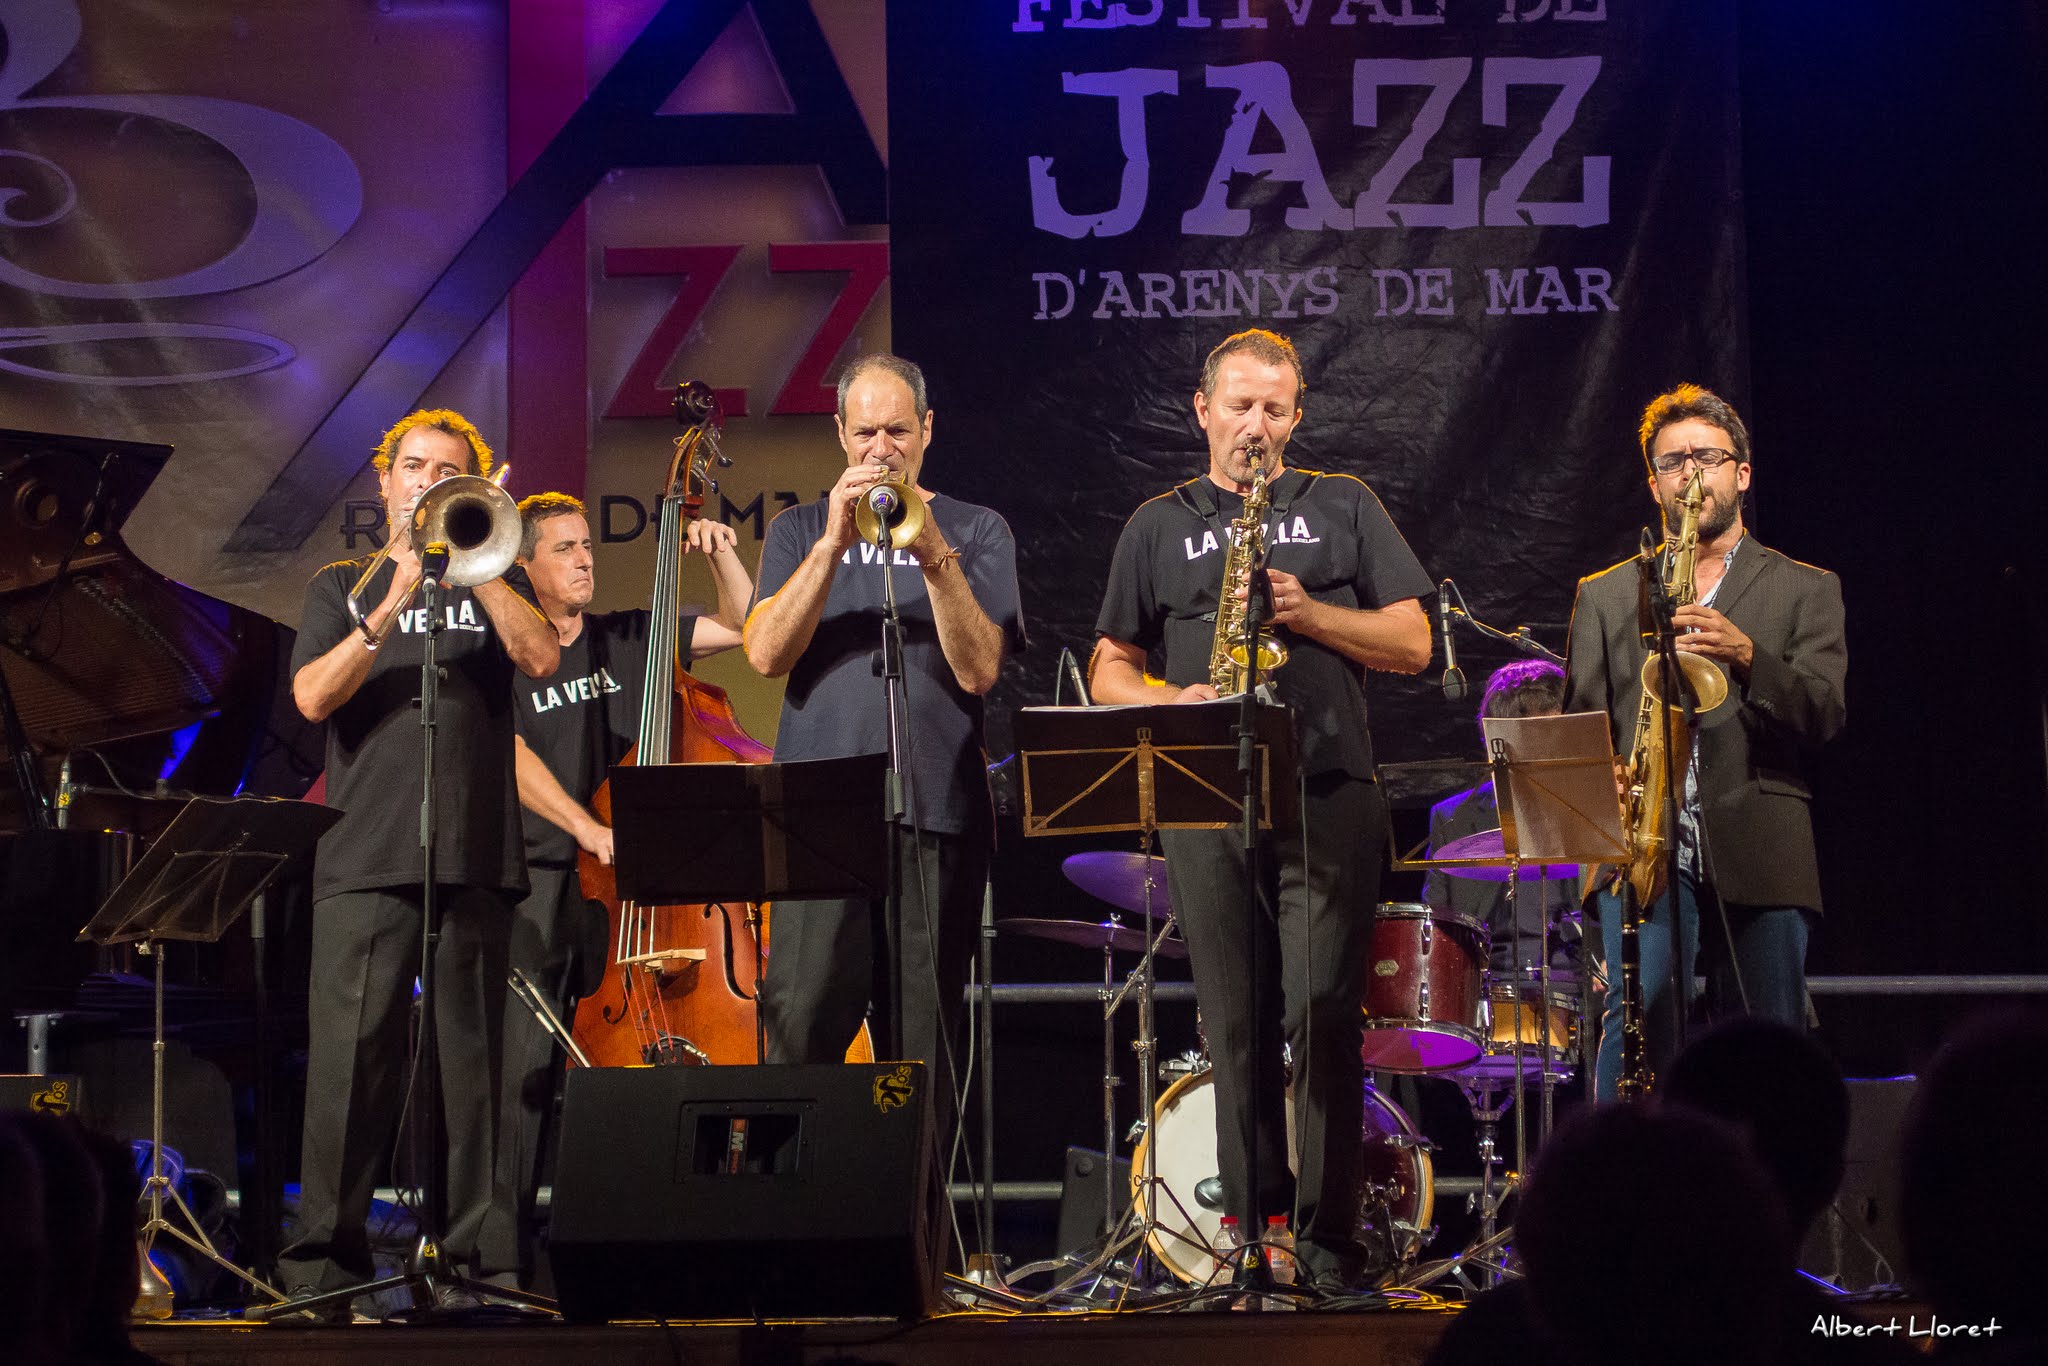 Imatges del 25 Festival de Jazz d'Arenys de Mar - 2016 - Foto 80911873